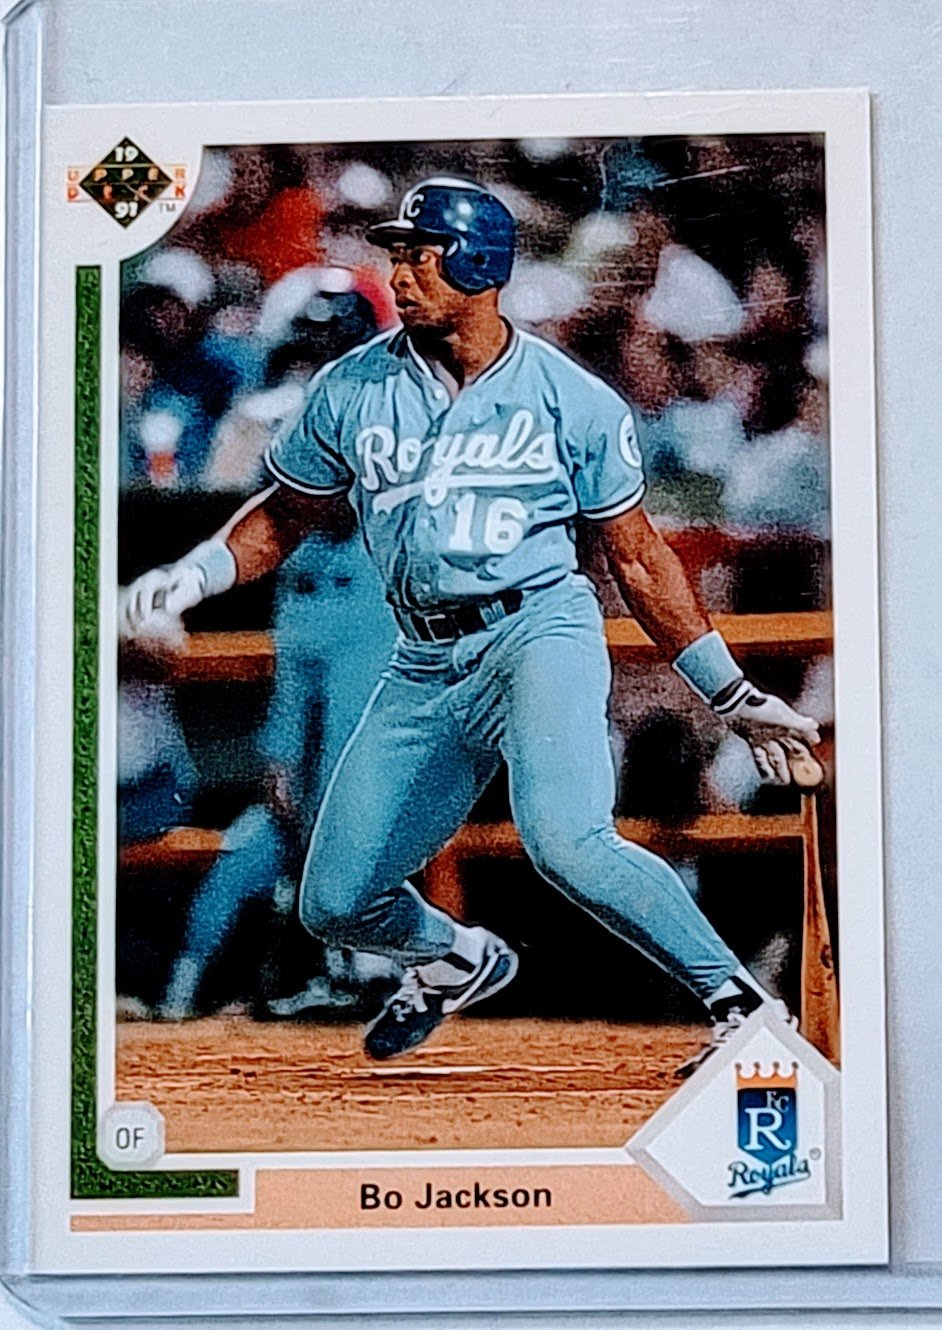 1991 Upper Deck Bo Jackson Baseball Trading Card TPTV